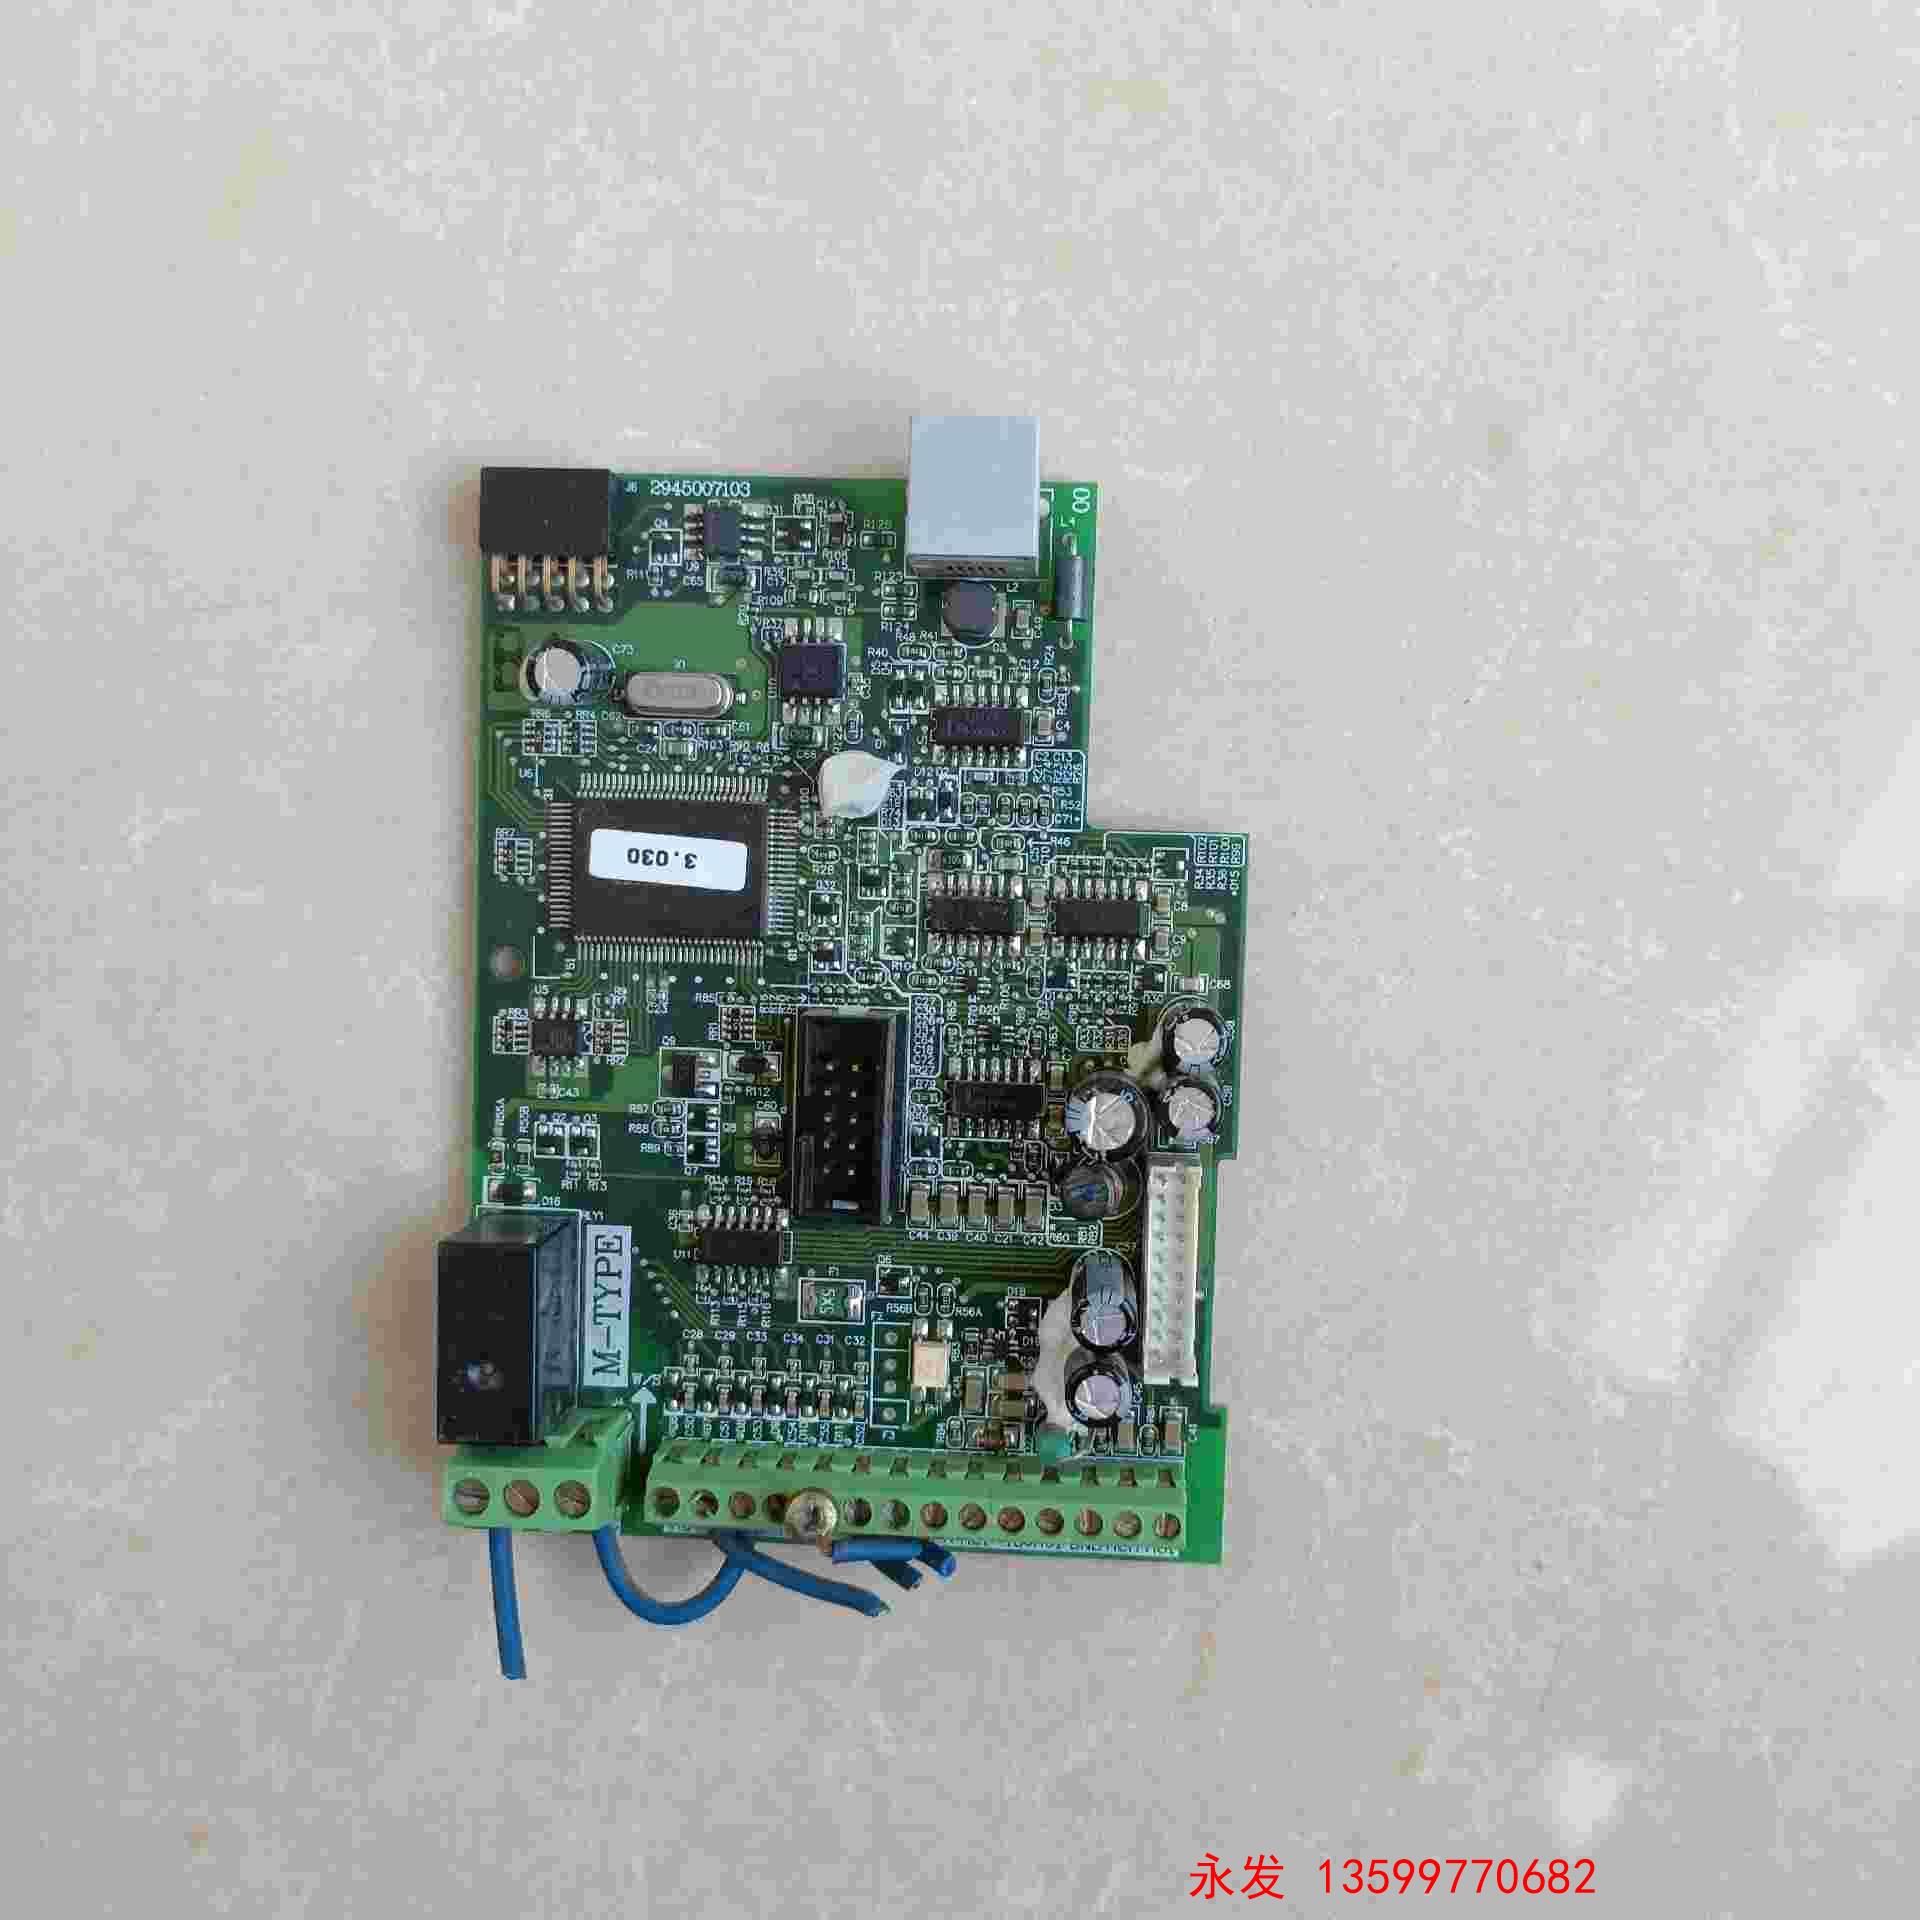 2945007103 拆机台达变频器 VFDM 主板CP 电子元器件市场 其它元器件 原图主图